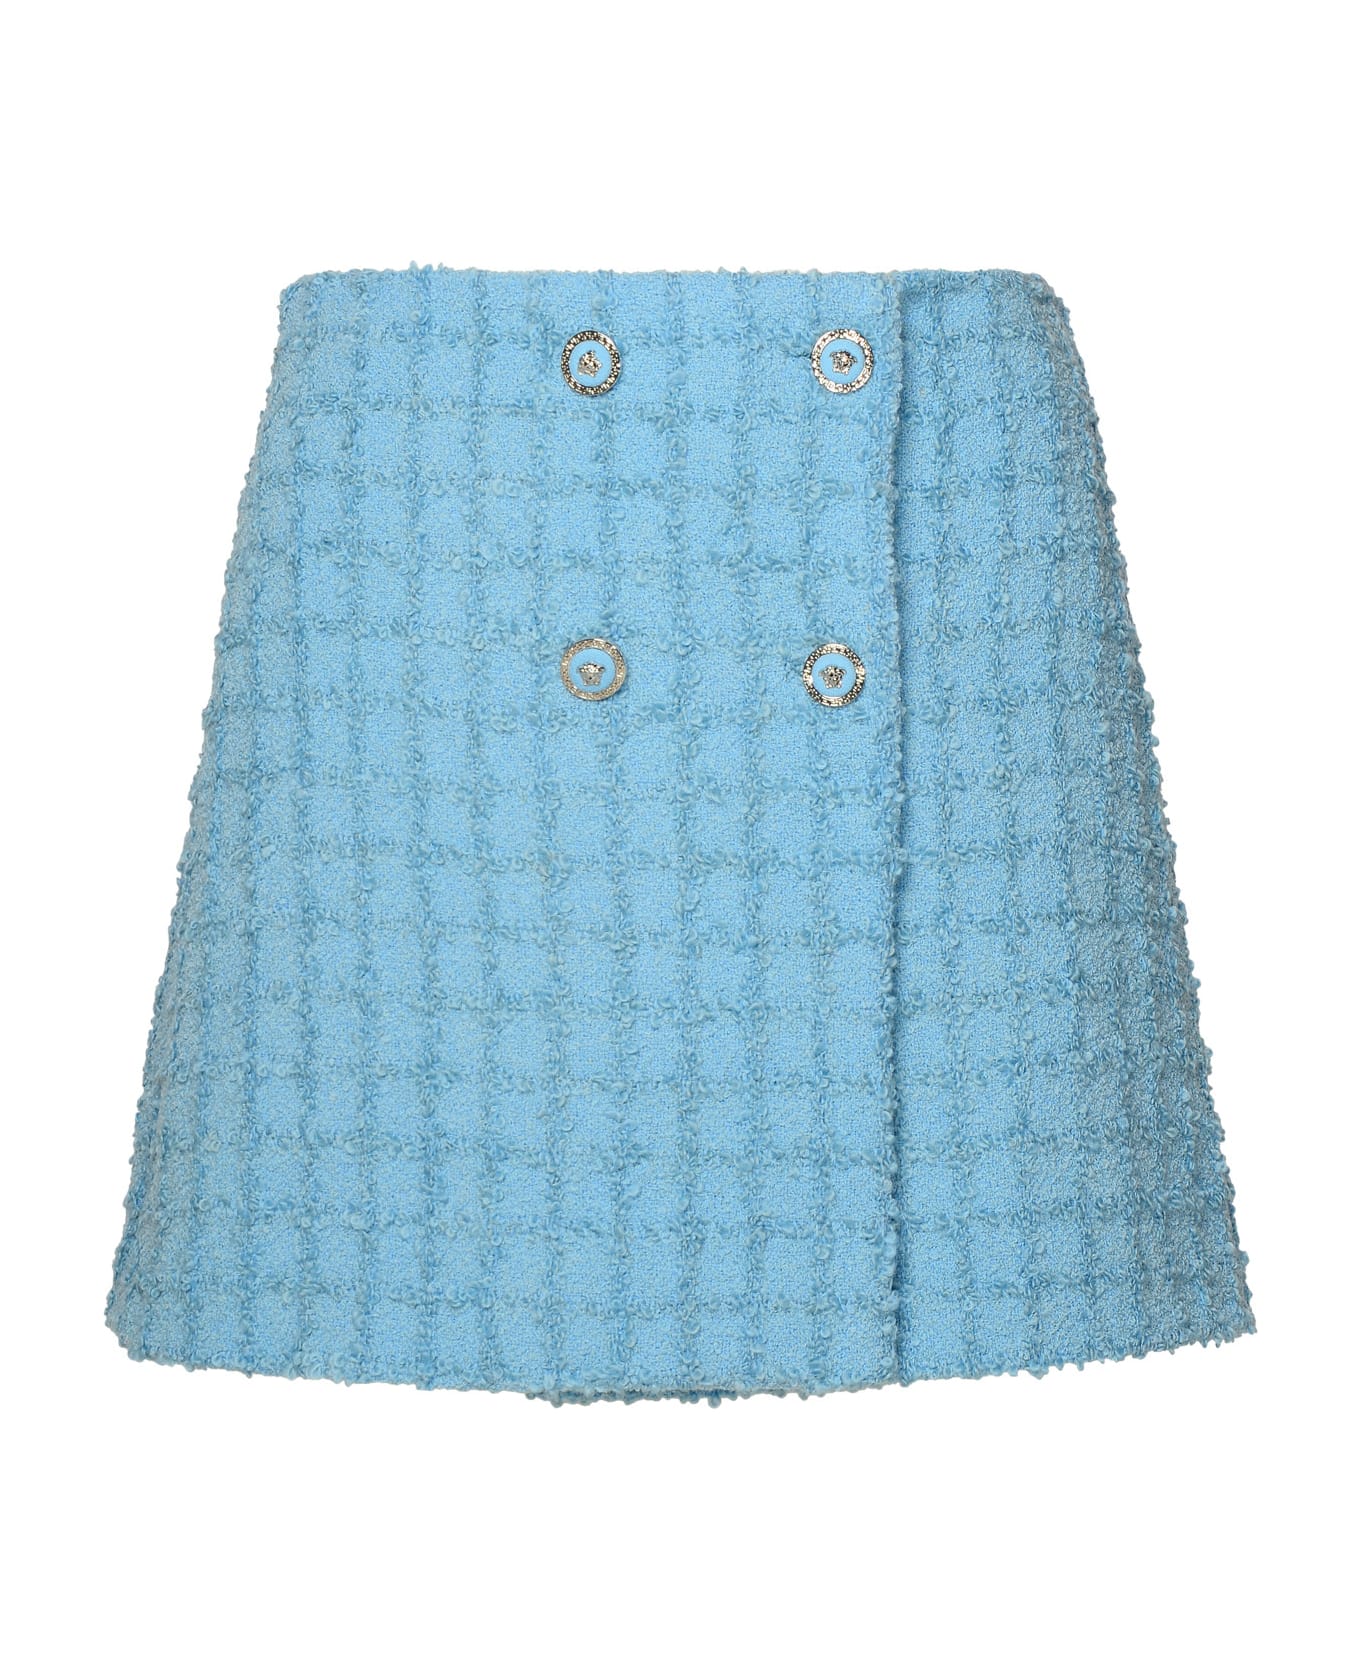 Versace Skirt In Light Blue Virgin Wool Blend - Light Blue